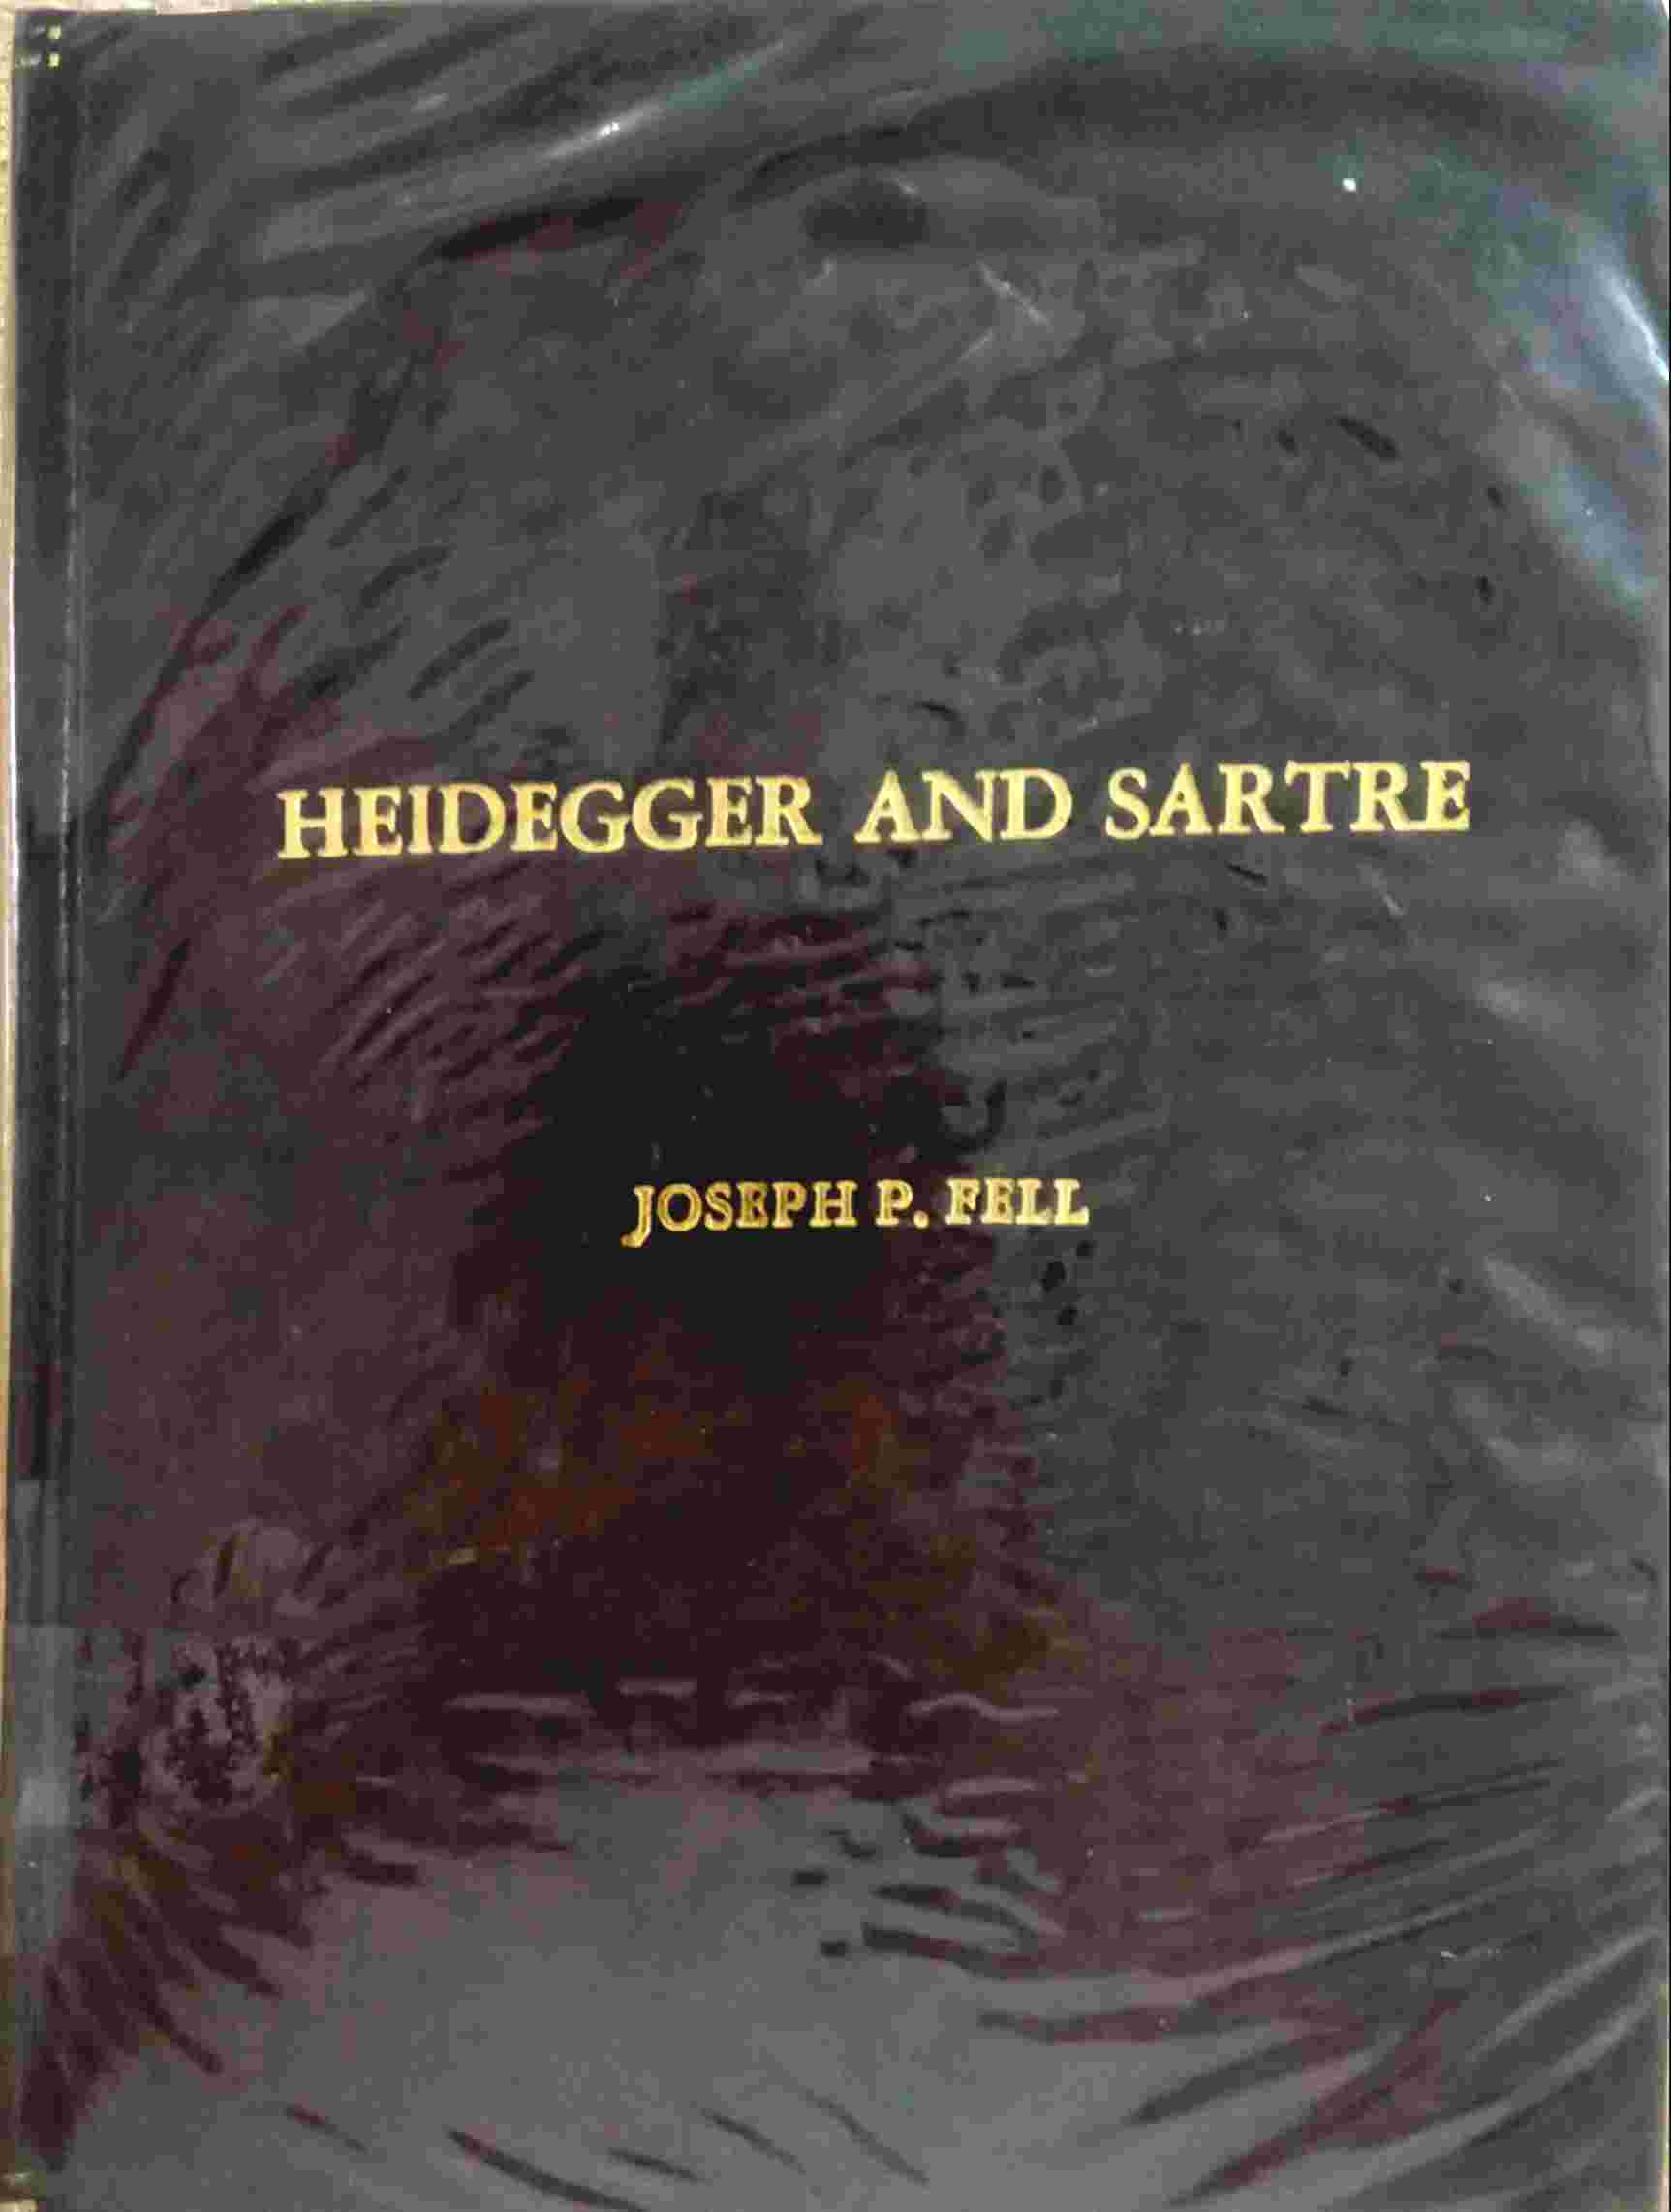 HEIDEGGER AND SARTRE